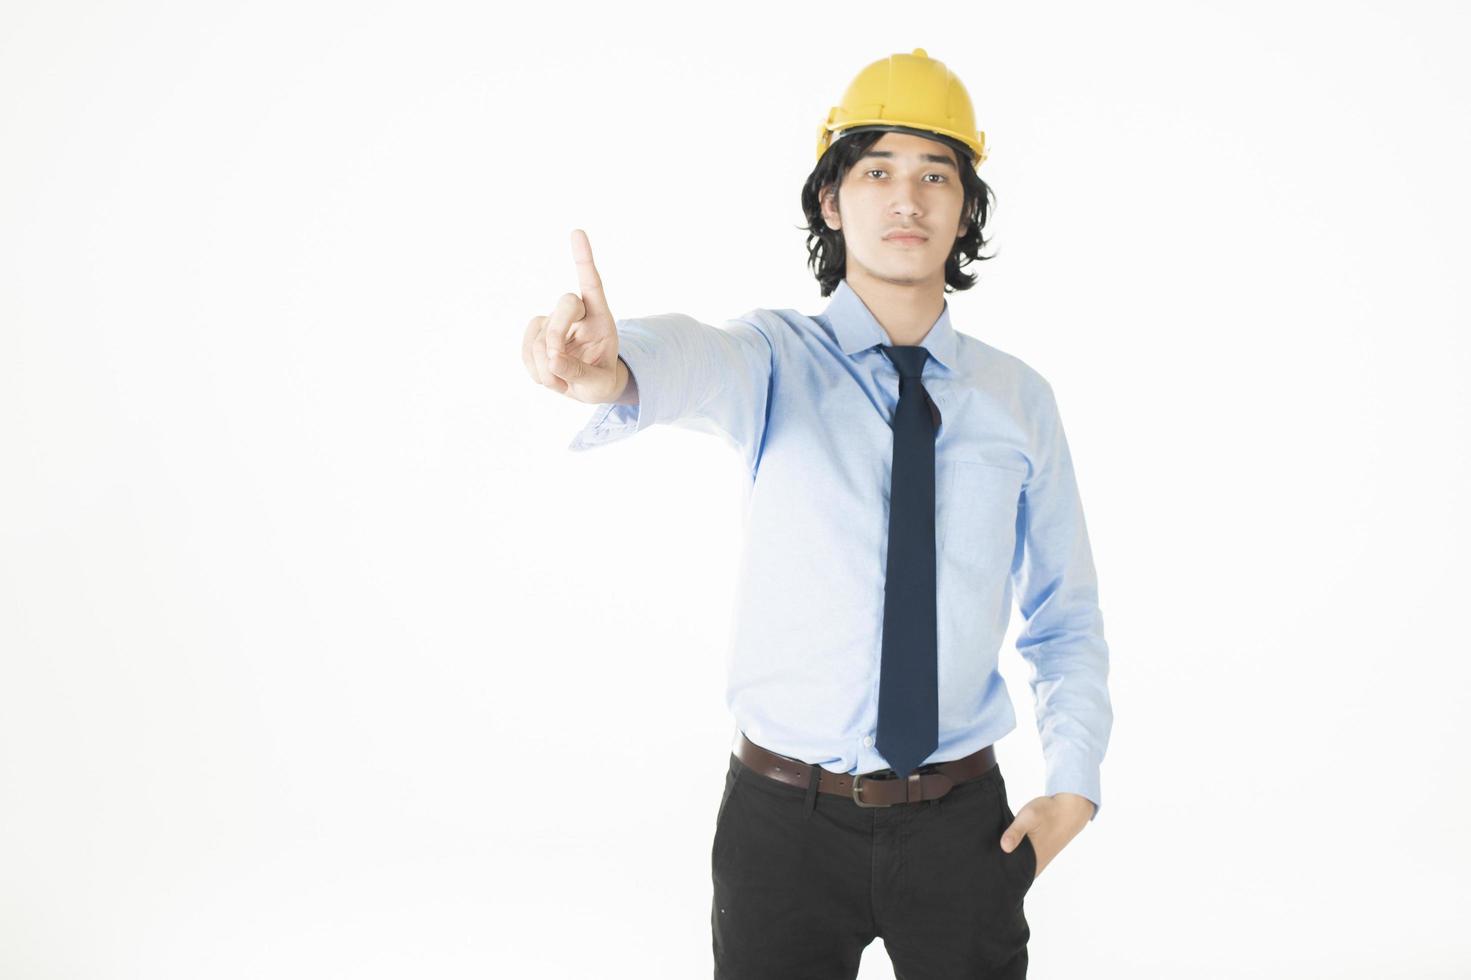 Ingenieur mit gelbem Helm auf Weiß foto